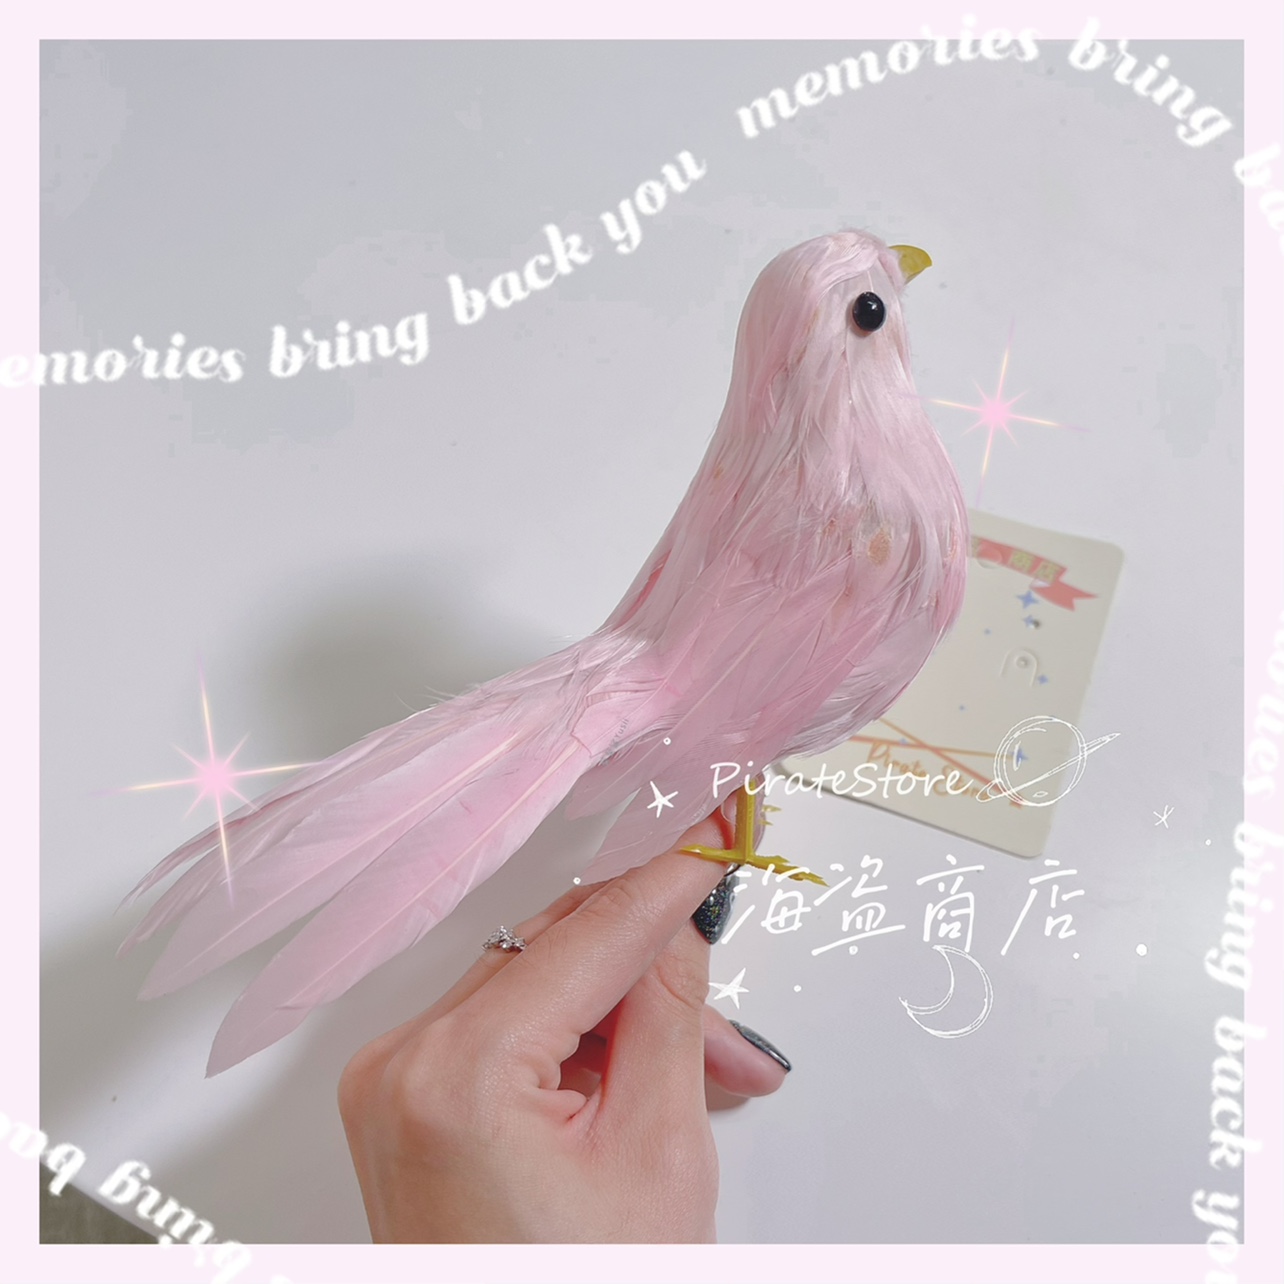 那只粉色小鸟 如我梦想的青春一般梦幻浪漫且敏感 lolita汉服布景